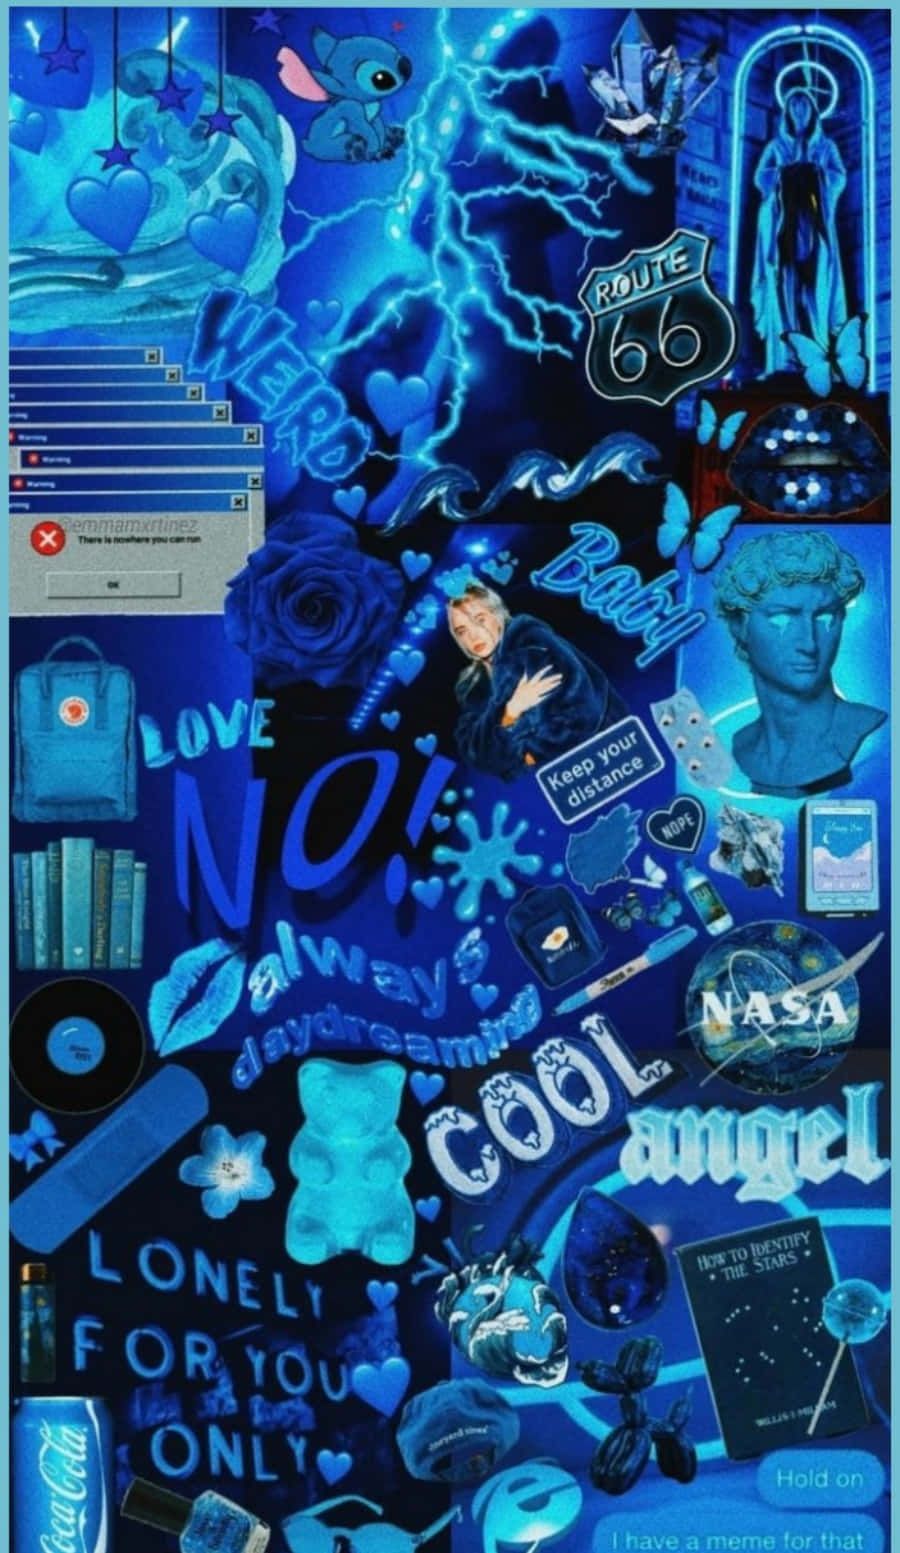 Blue aesthetic wallpaper for phone or desktop. - Design